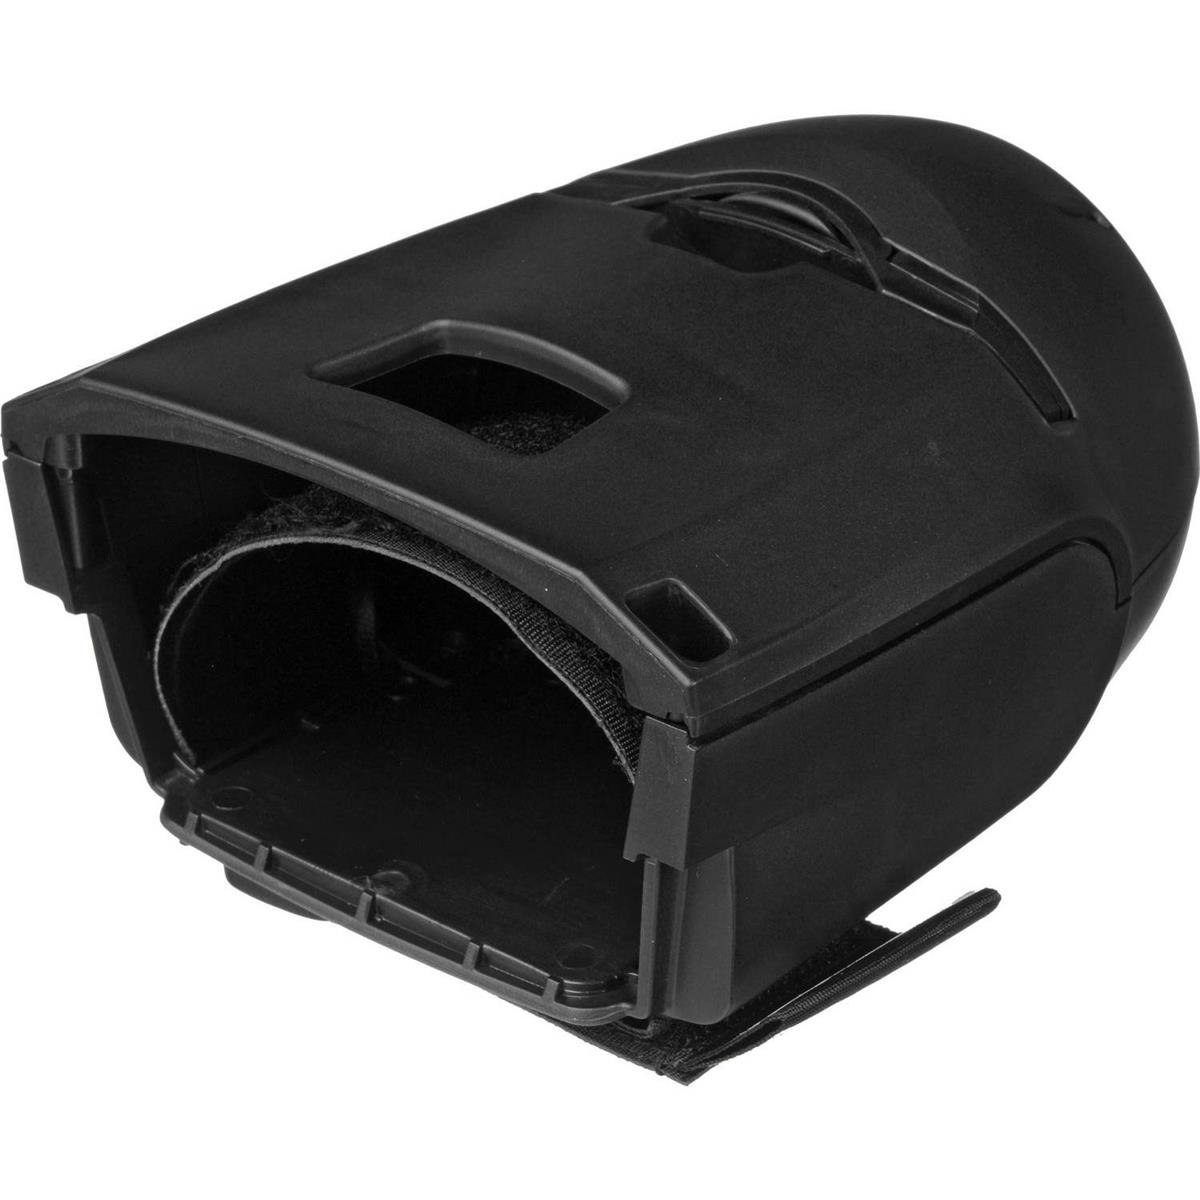 Image of Spekular Light Blaster Strobe Based Projector for Canon EF/EF-S Lenses